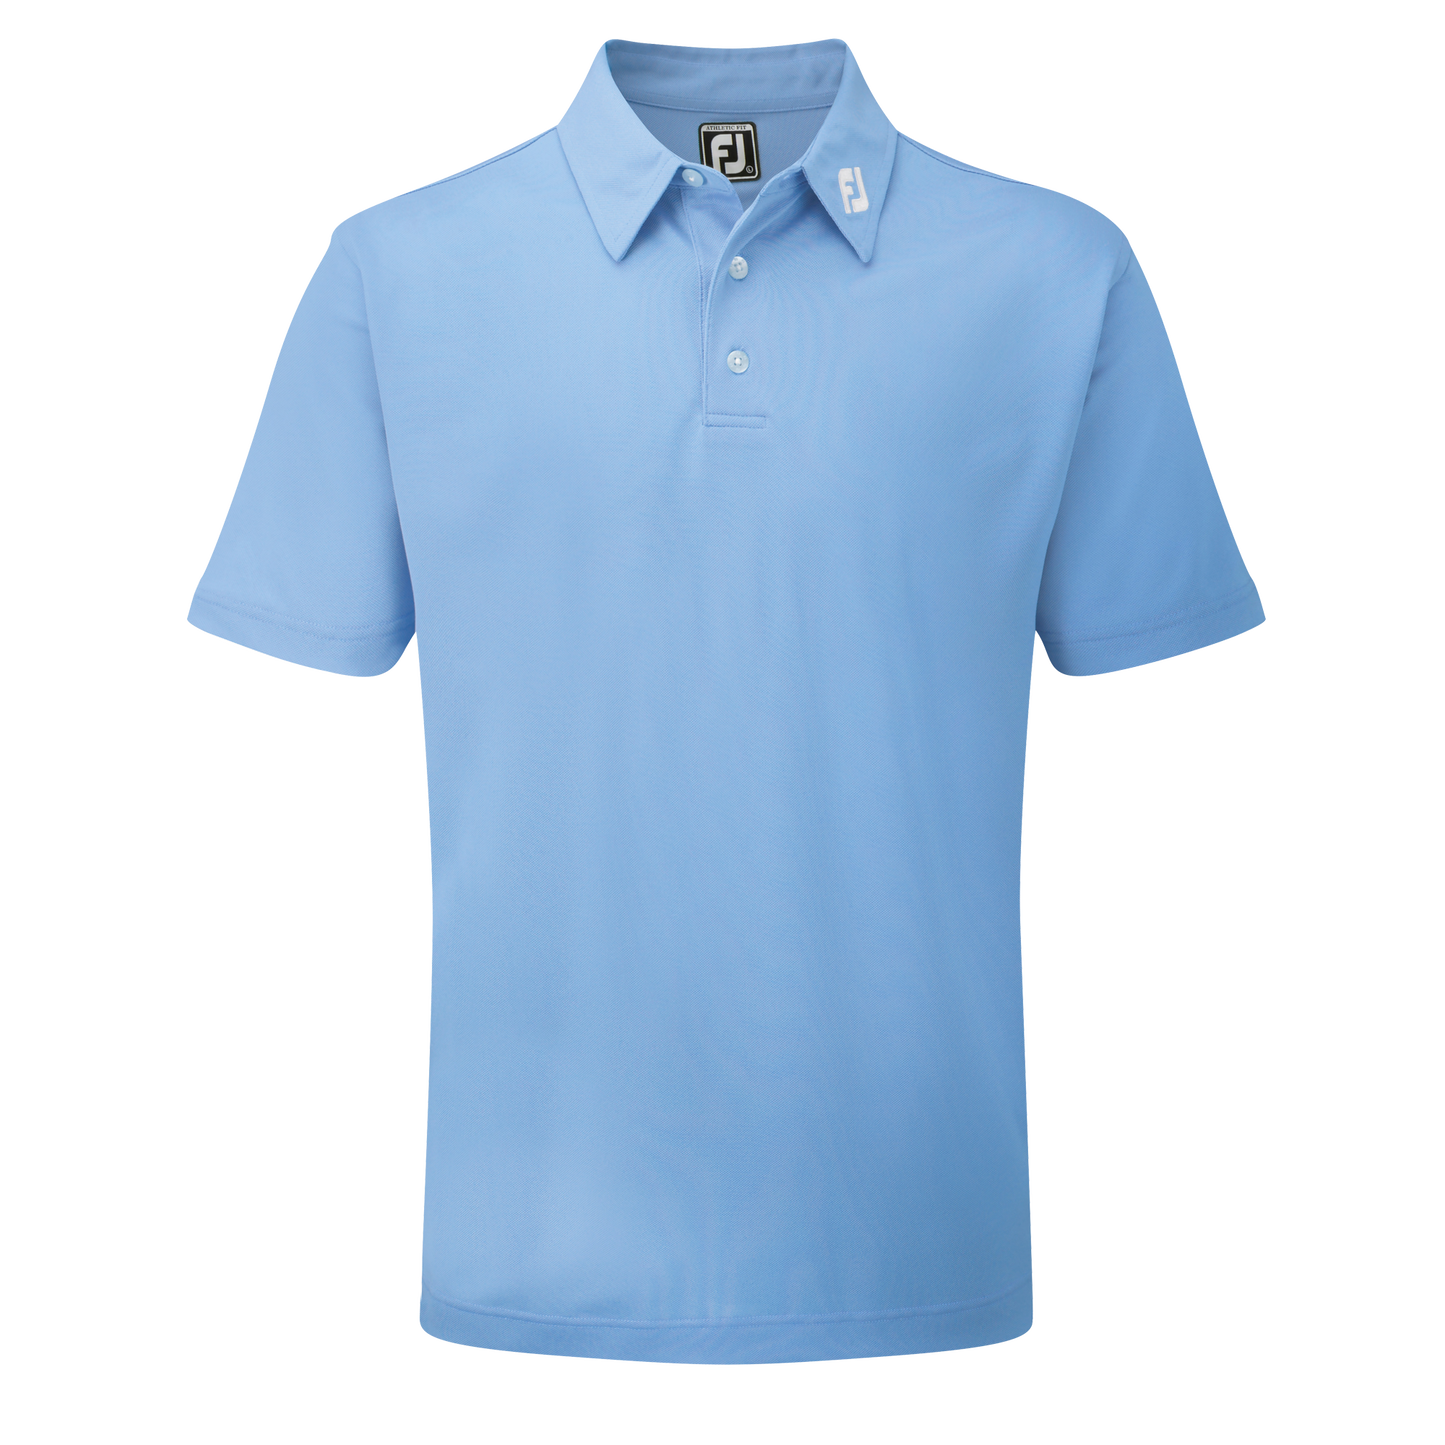 Footjoy Golf Stretch Pique Polo Shirt Light Blue S 